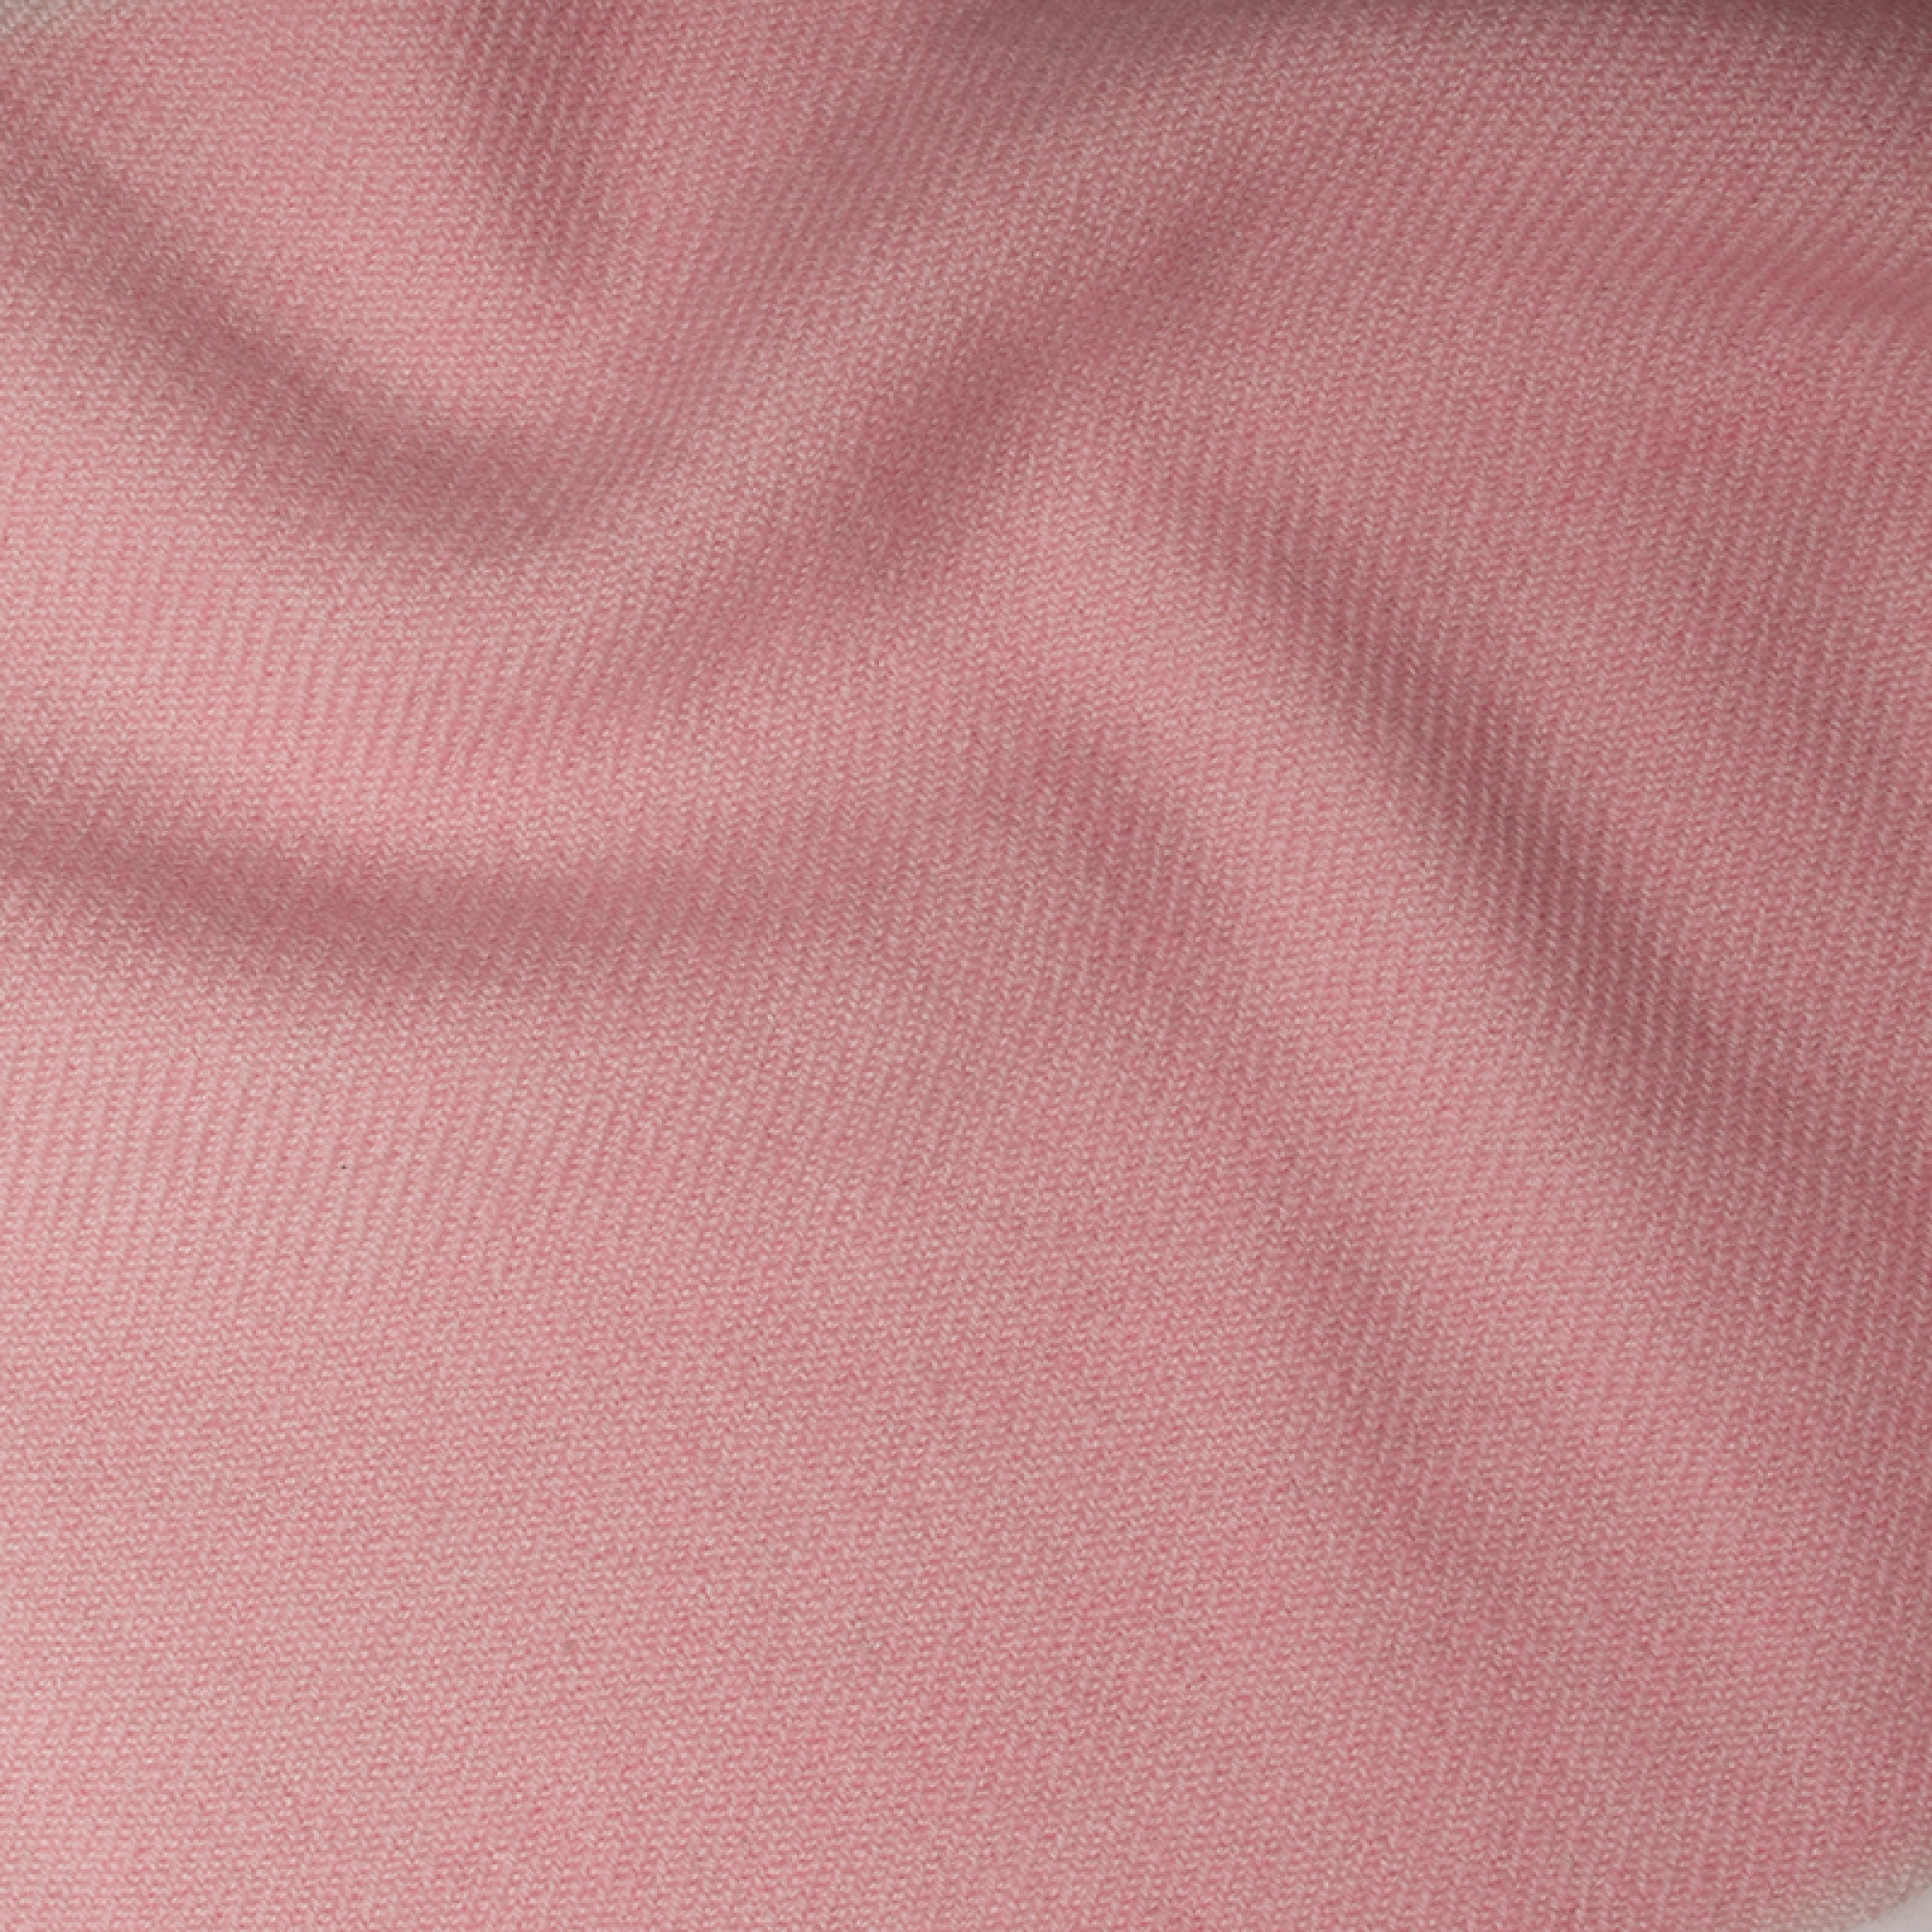 Cashmere accessori cocooning toodoo plain m 180 x 220 rosa confetto 180 x 220 cm